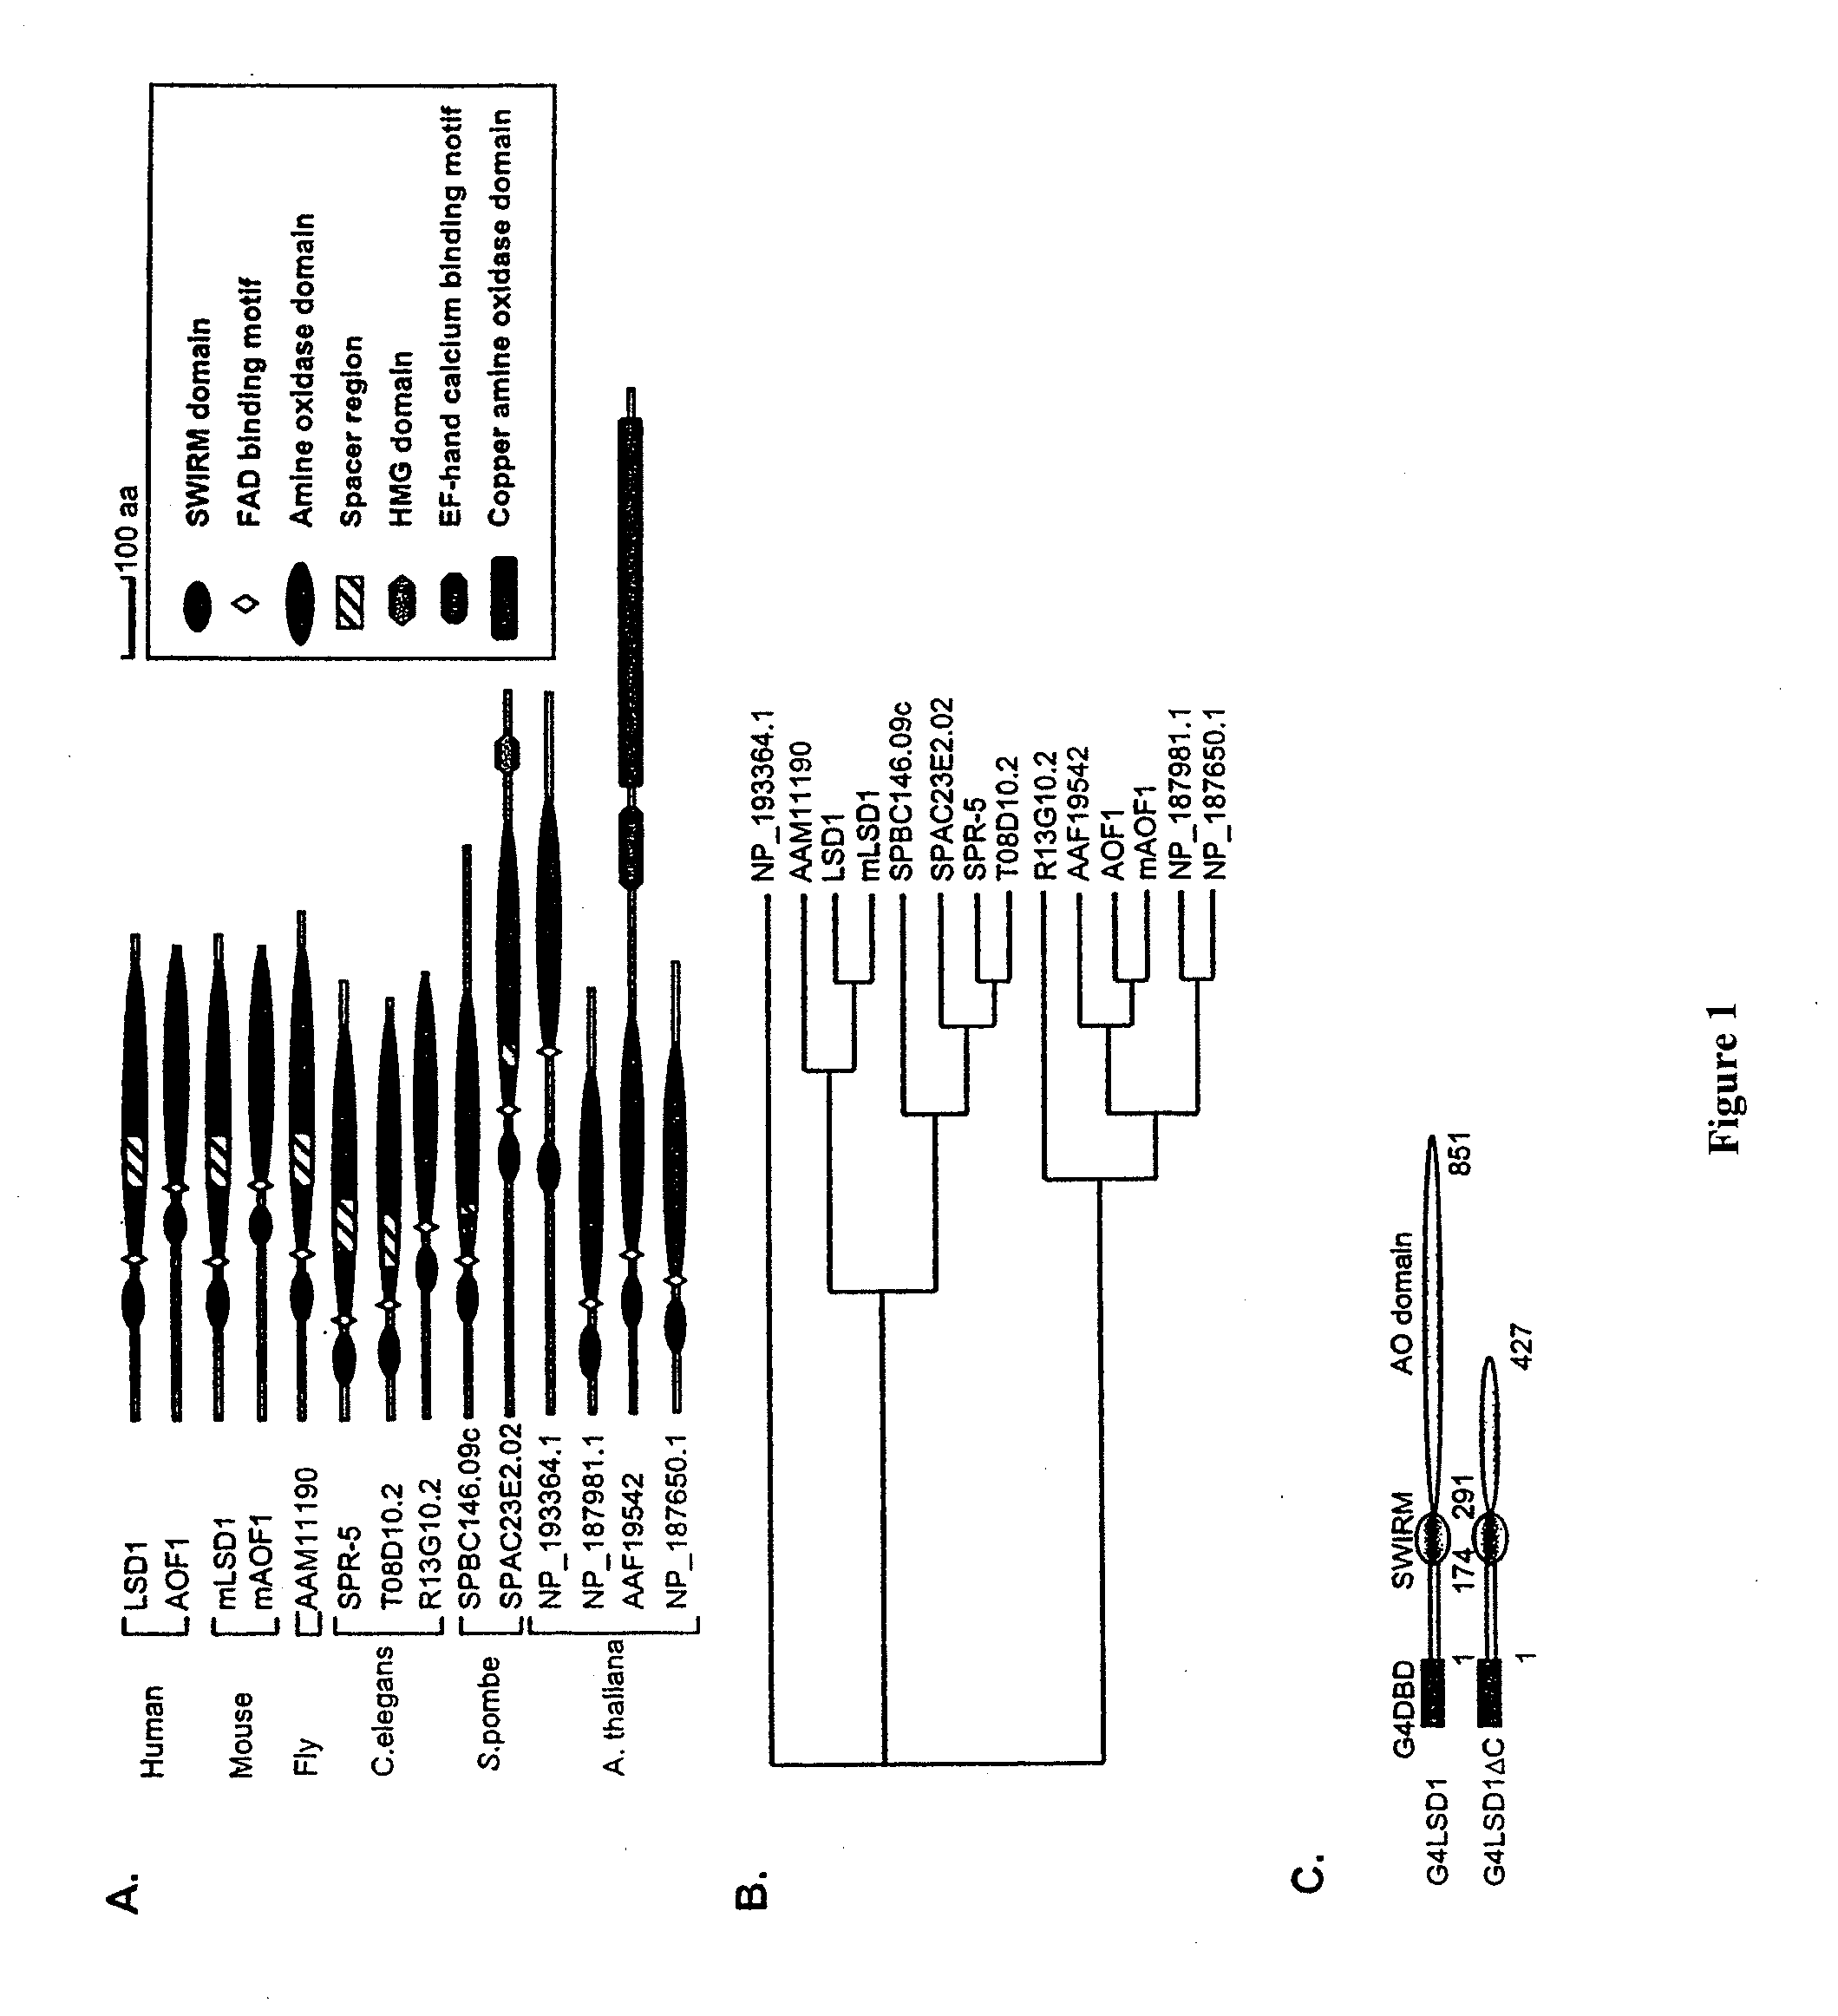 Histone Demethylation Mediated by the Nuclear Amine Oxidase Homolog LSD1